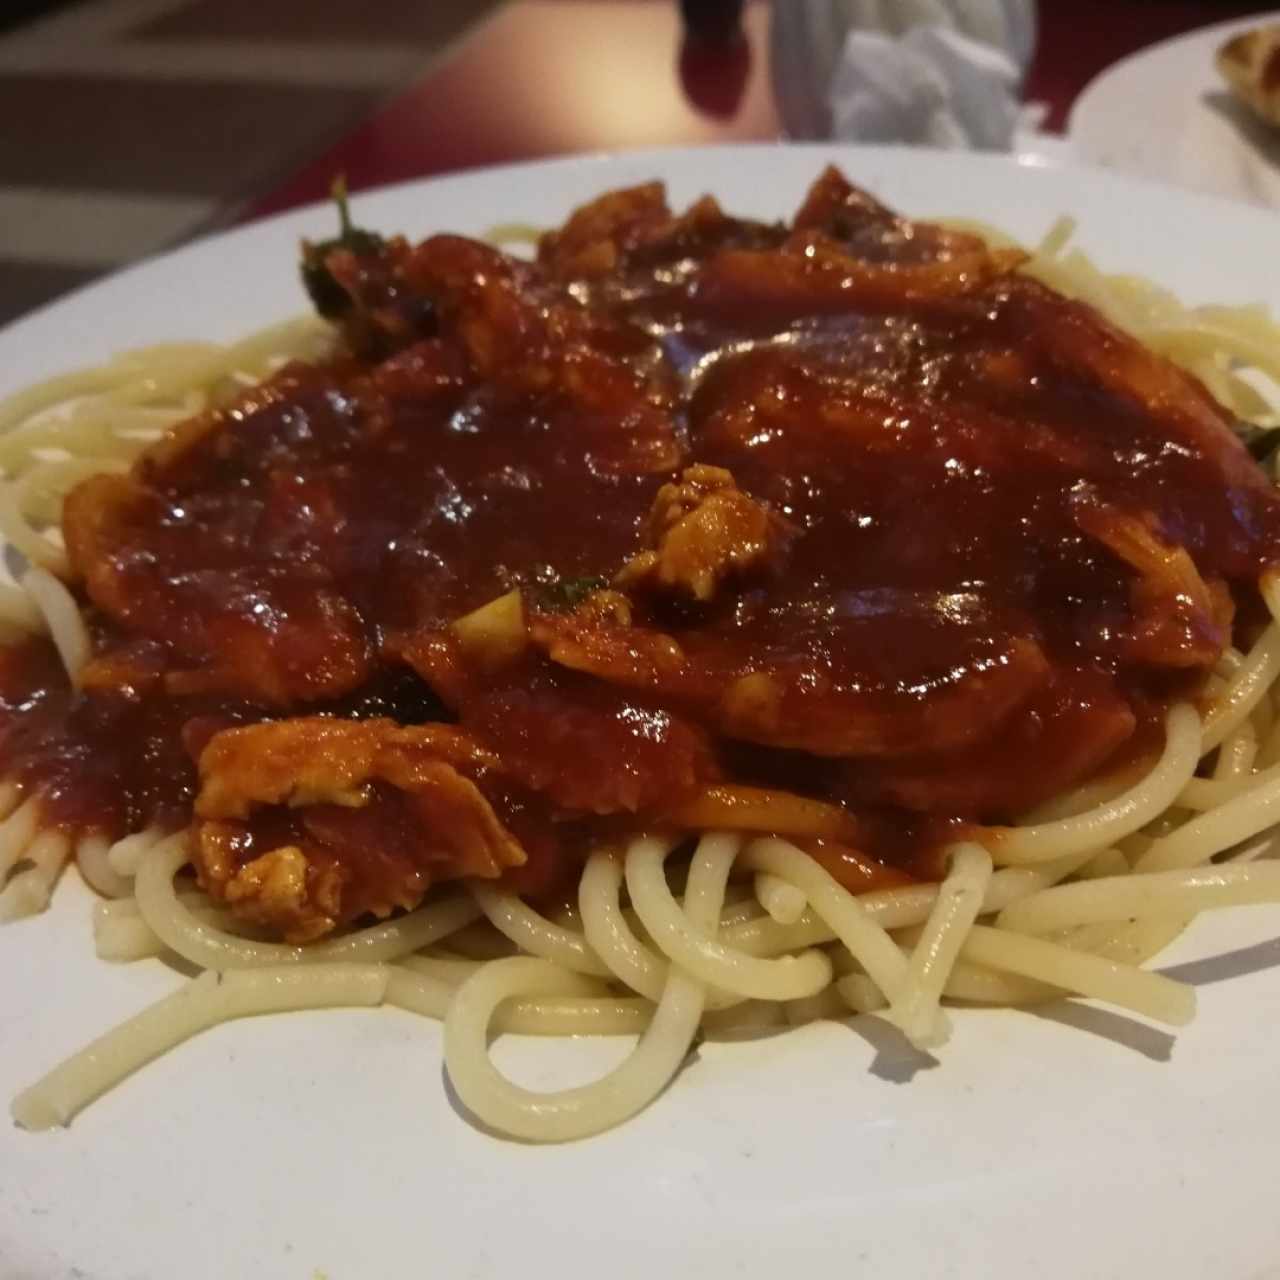 Spaghetti con Pollo